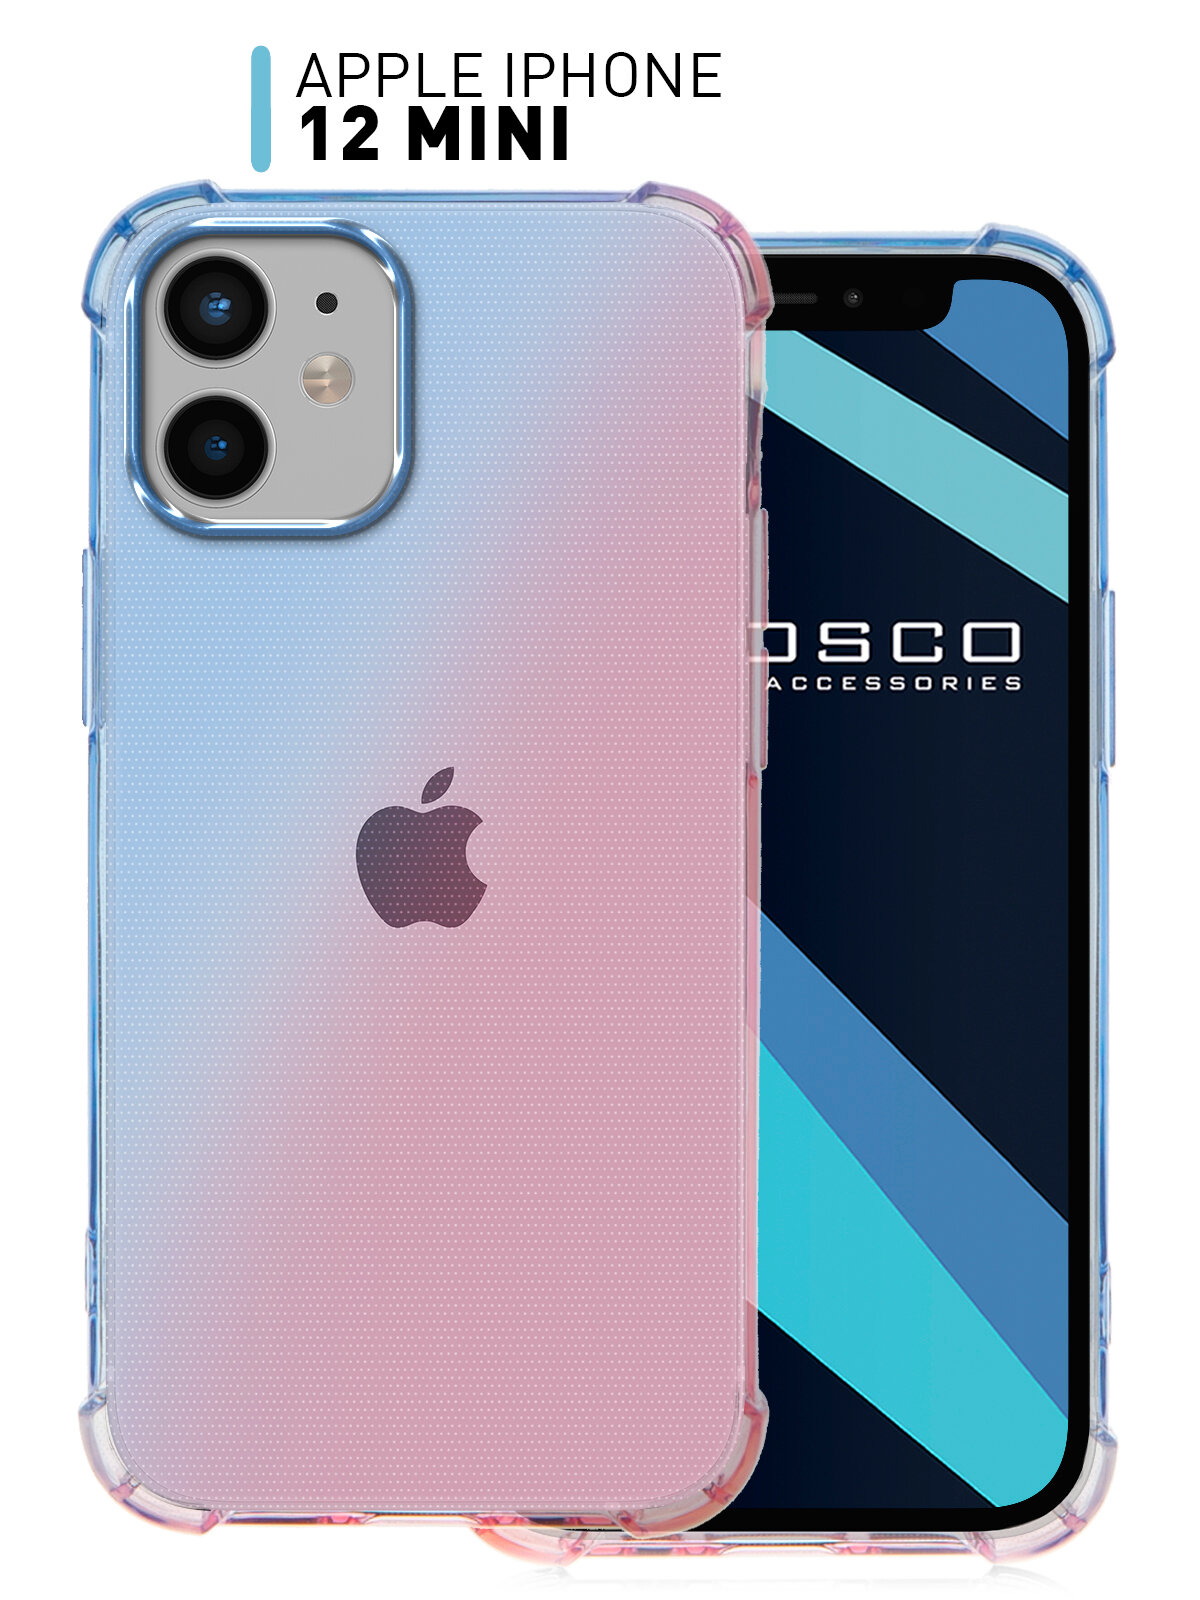 Противоударный чехол для Apple iPhone 12 mini (Айфон 12 мини) силиконовый чехол усиленный бортик вокруг камеры прозрачный сине-розовый ROSCO